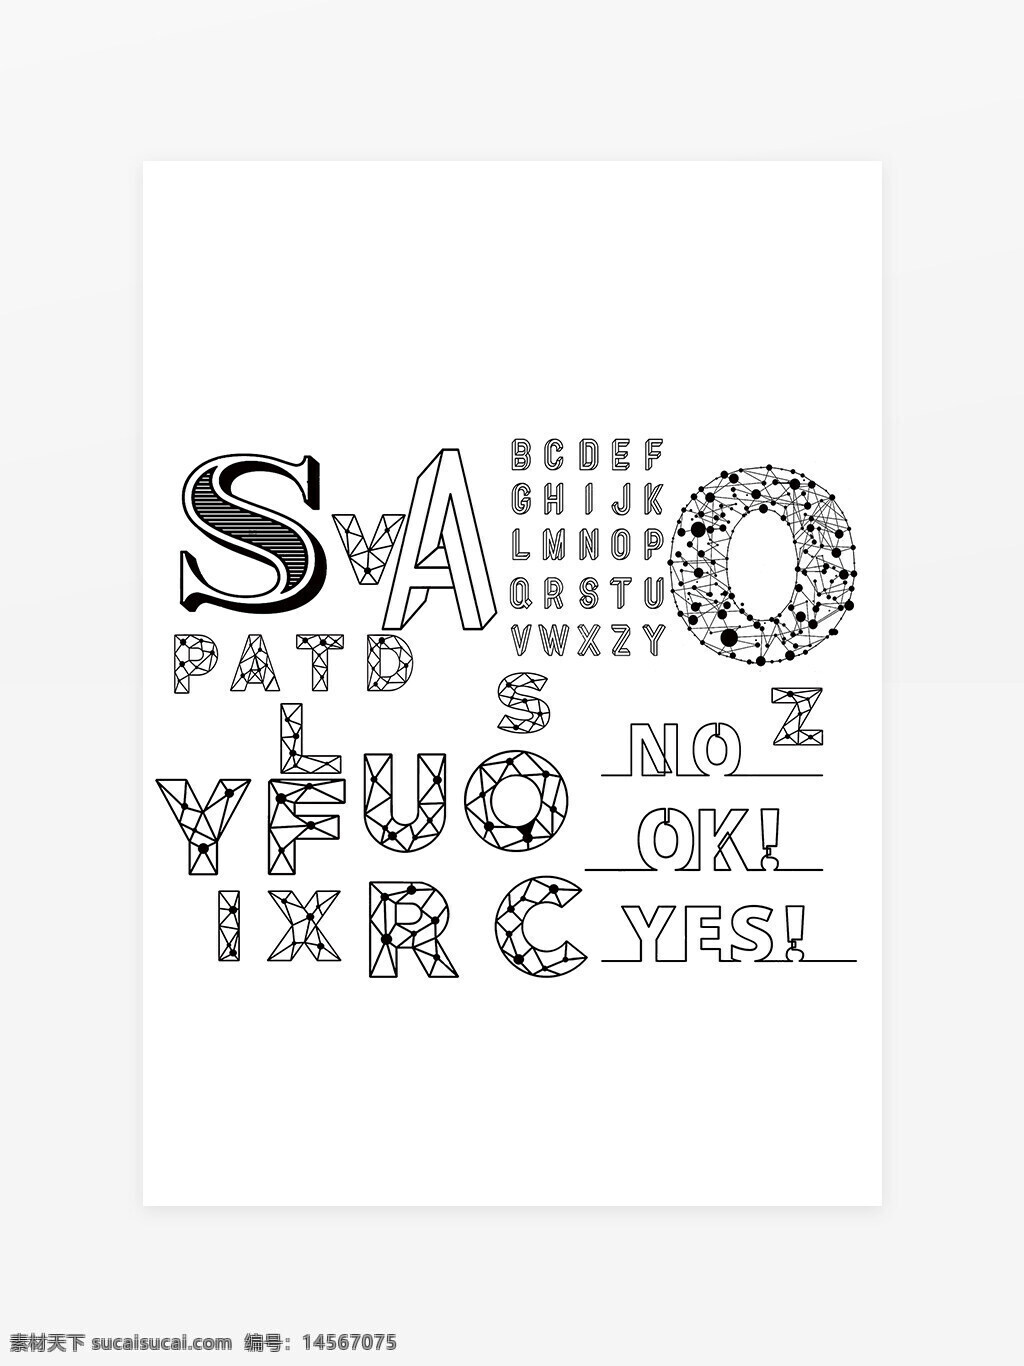 艺术字体设计 艺术字 字体设计 手写字体 网格字体 字体组合 线条字体